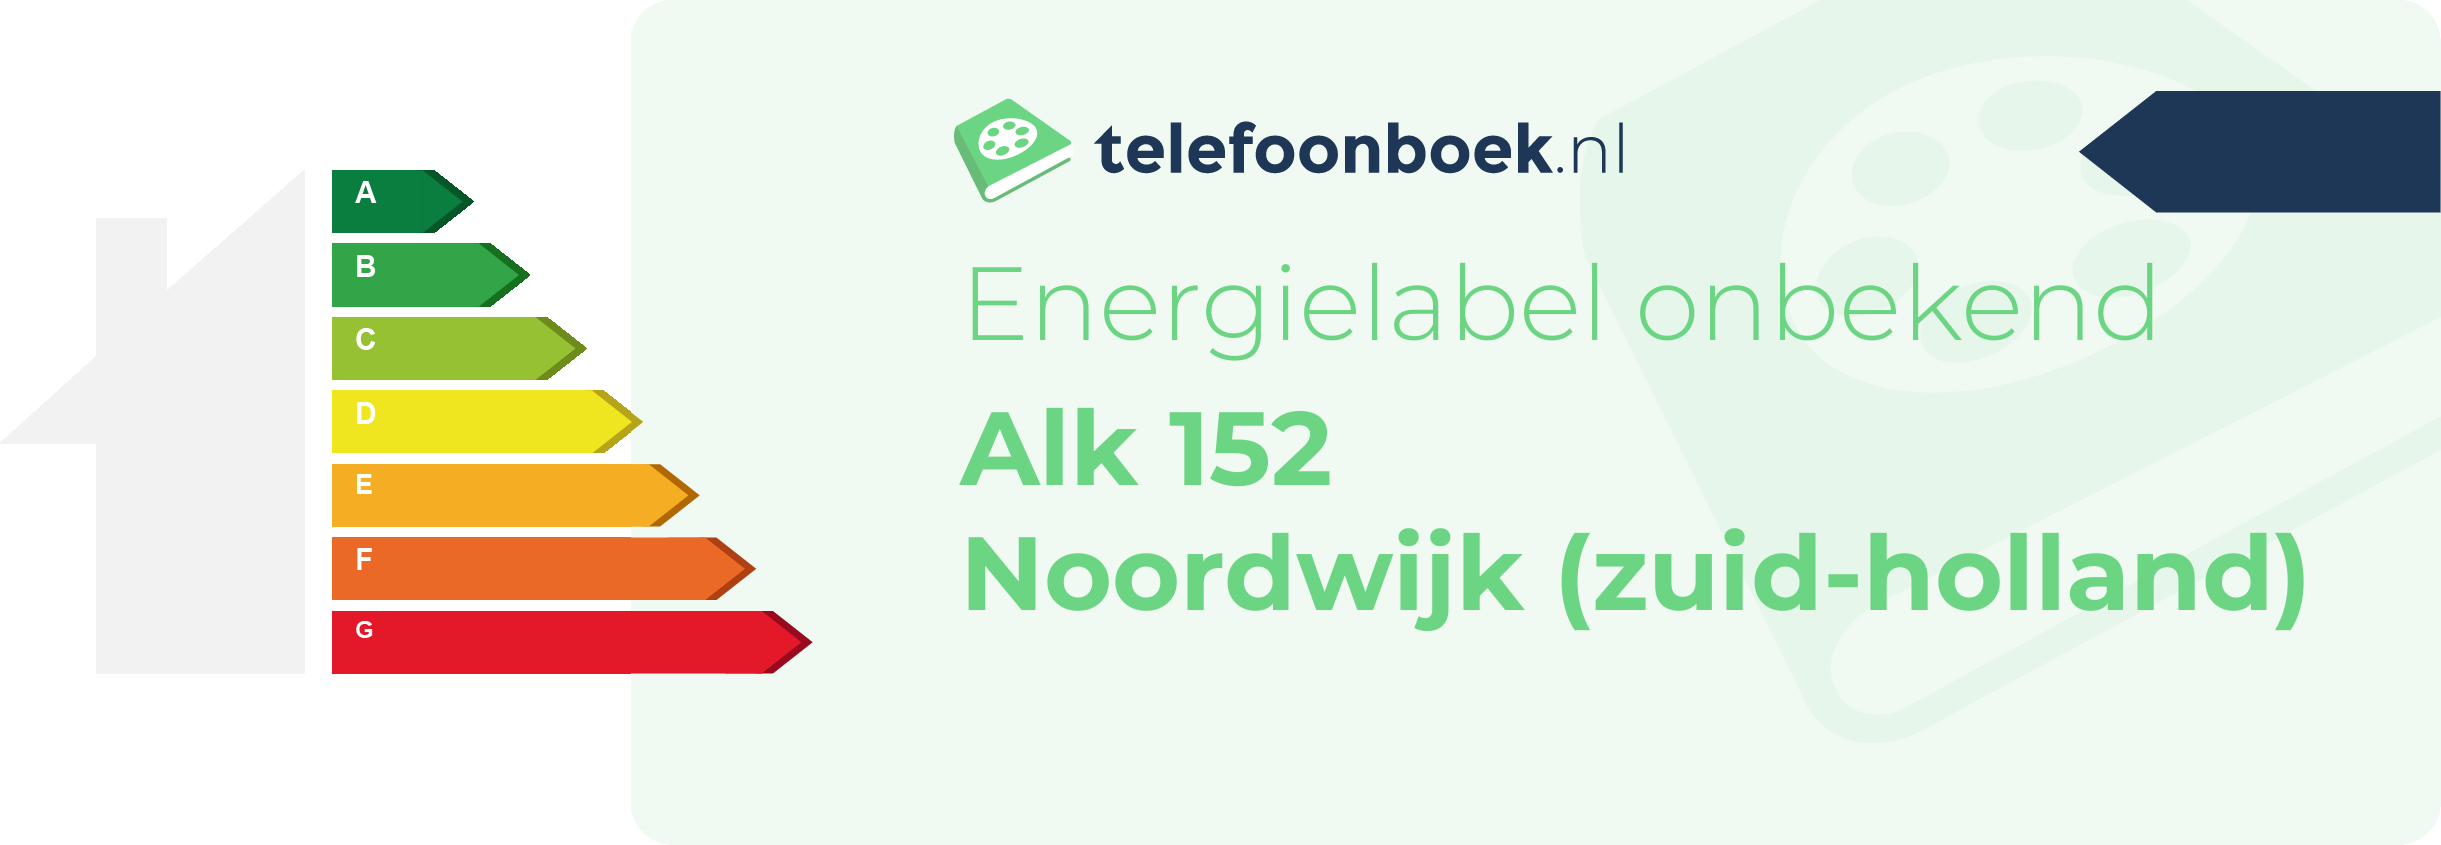 Energielabel Alk 152 Noordwijk (Zuid-Holland)